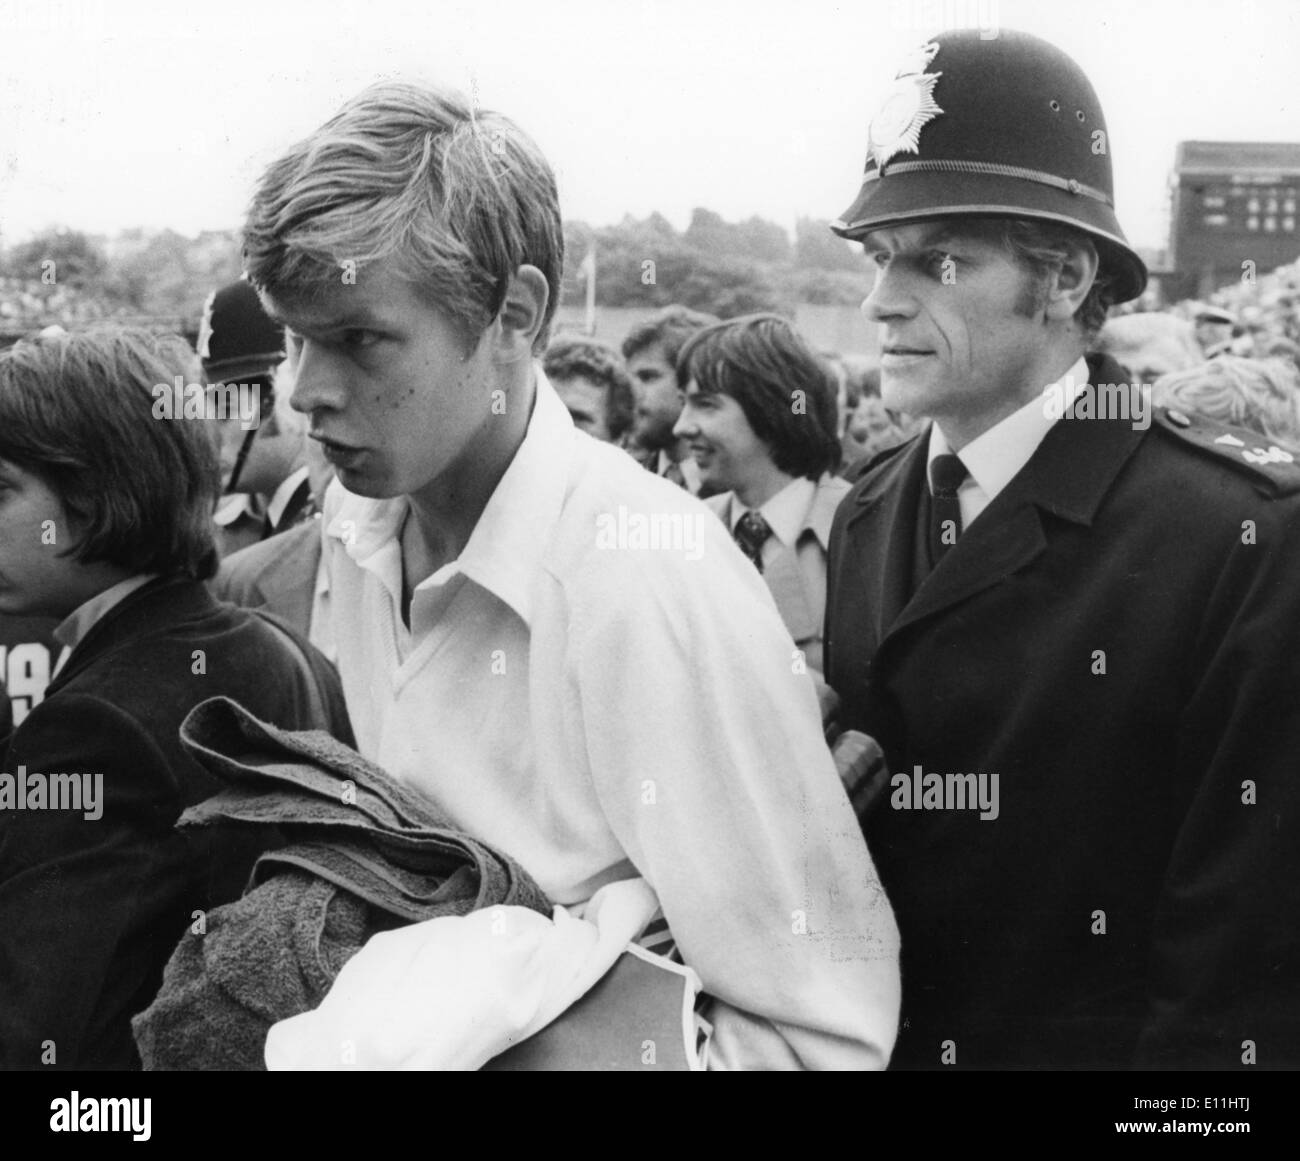 Giugno 26, 1978 - Londra, Inghilterra, Regno Unito - Giocatore di Tennis BUSTER MOTTROM essendo scortato da un poliziotto dopo aver battuto Douglas Palm a Wimbledon. Foto Stock